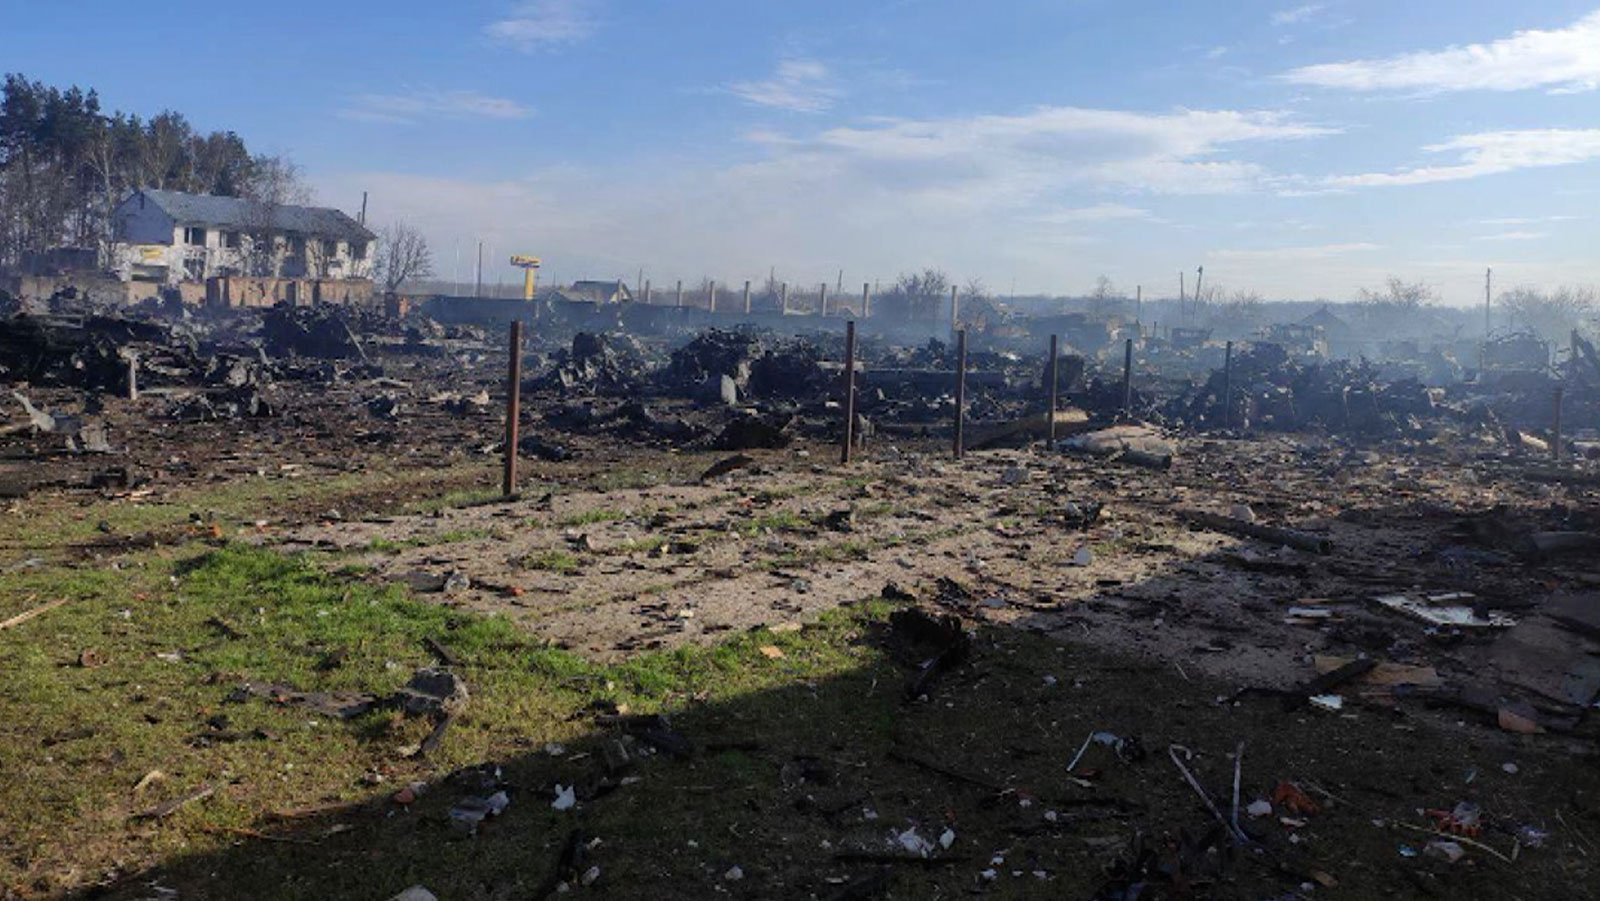 Видео уничтожений на украине. Новоайдар 2022. Разрушенная Украина.